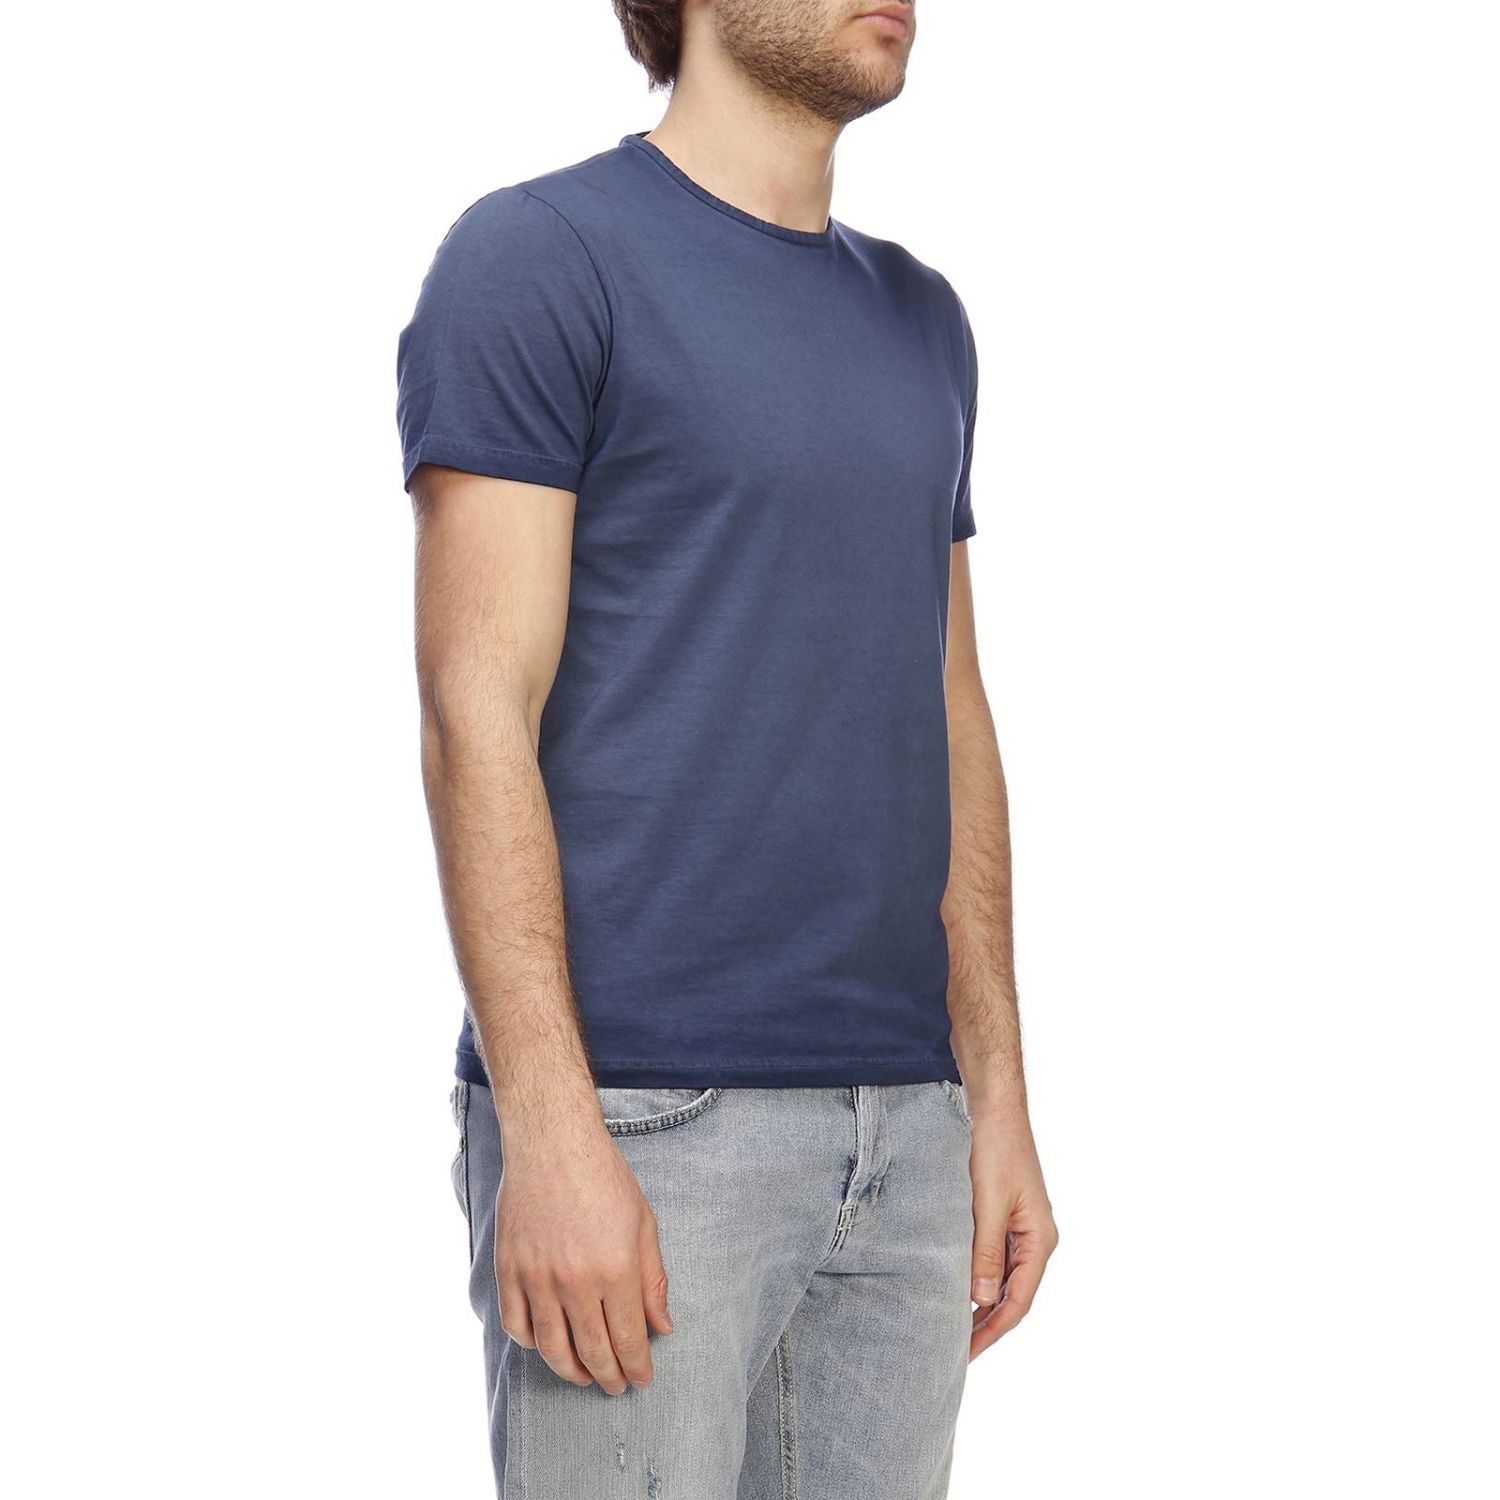 Brooksfield Outlet: T-shirt men - Blue | T-Shirt Brooksfield 200A J020 ...